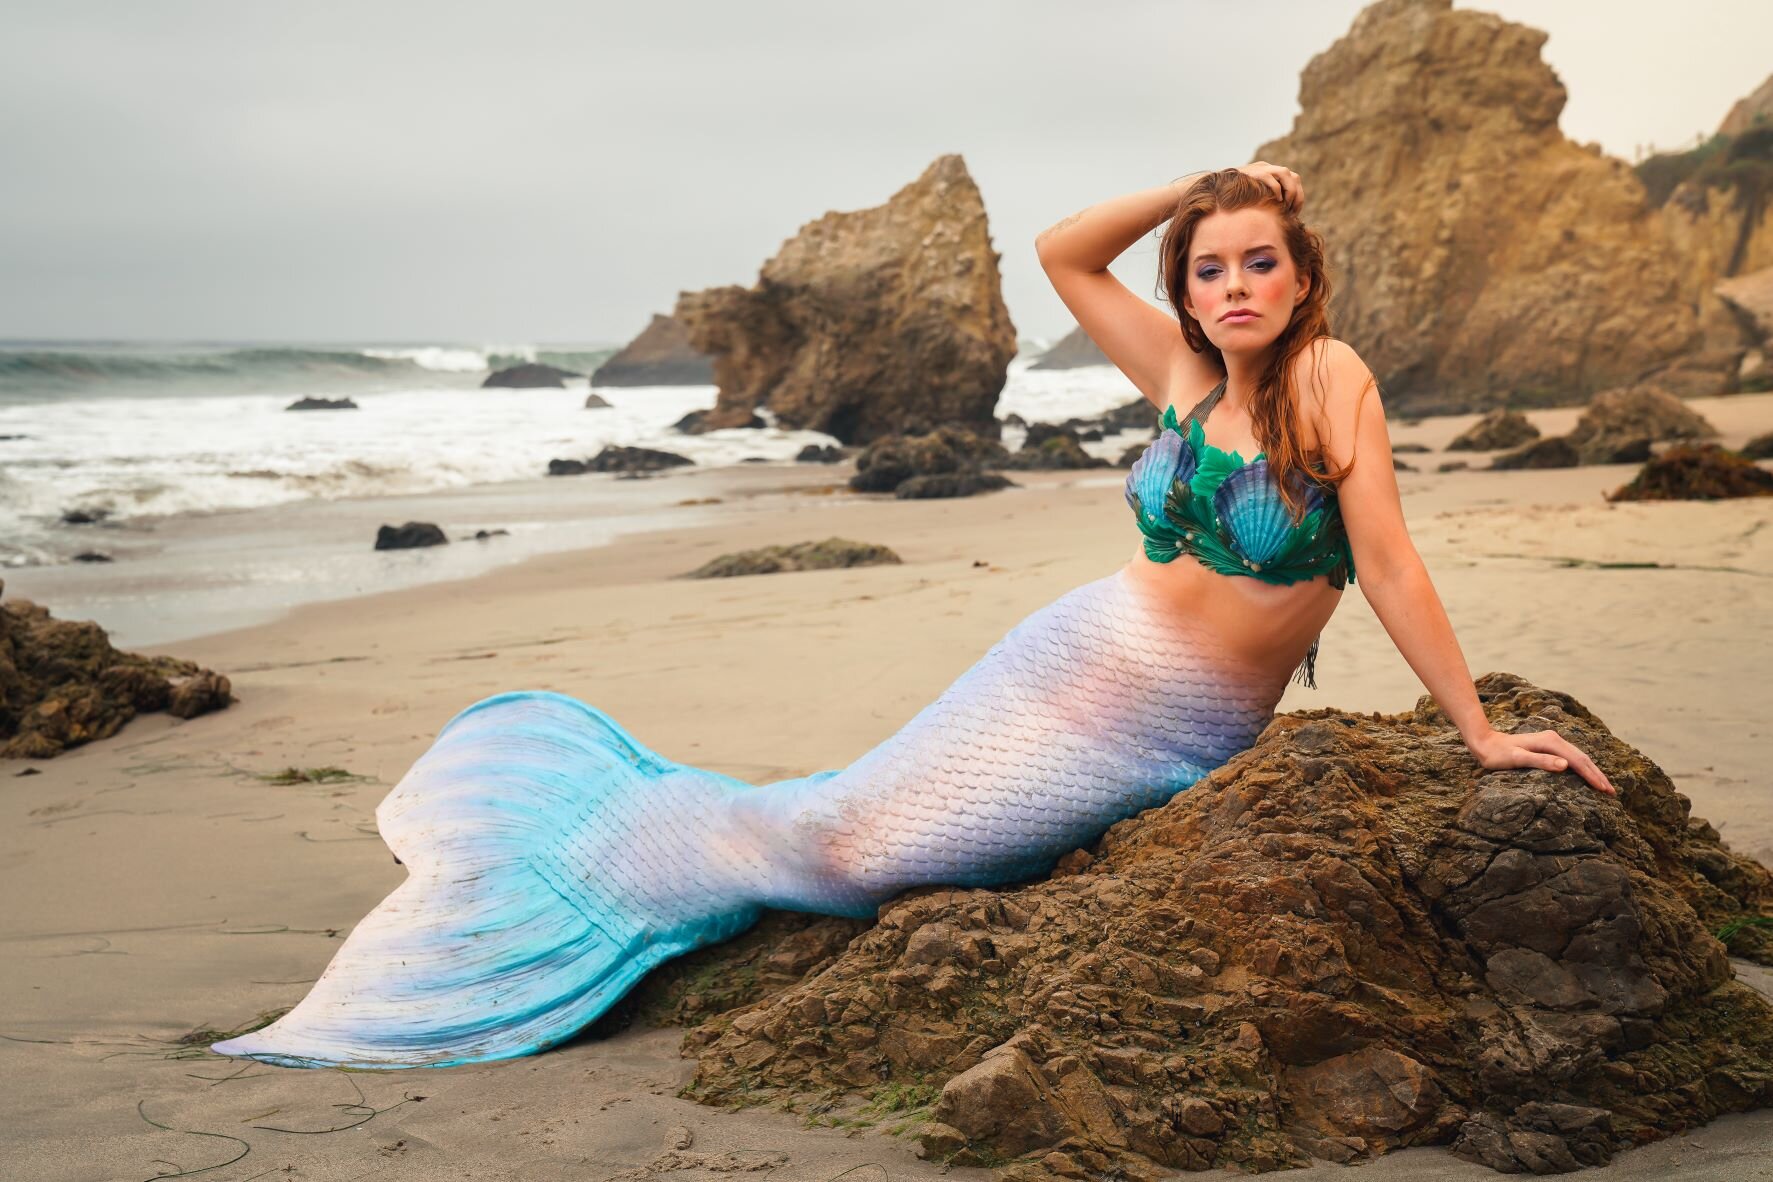 Mermaid Auora - West Hollywood WeHo Mermaid Pool Party Entertainment Performer - Sheroes Entertainment.jpg